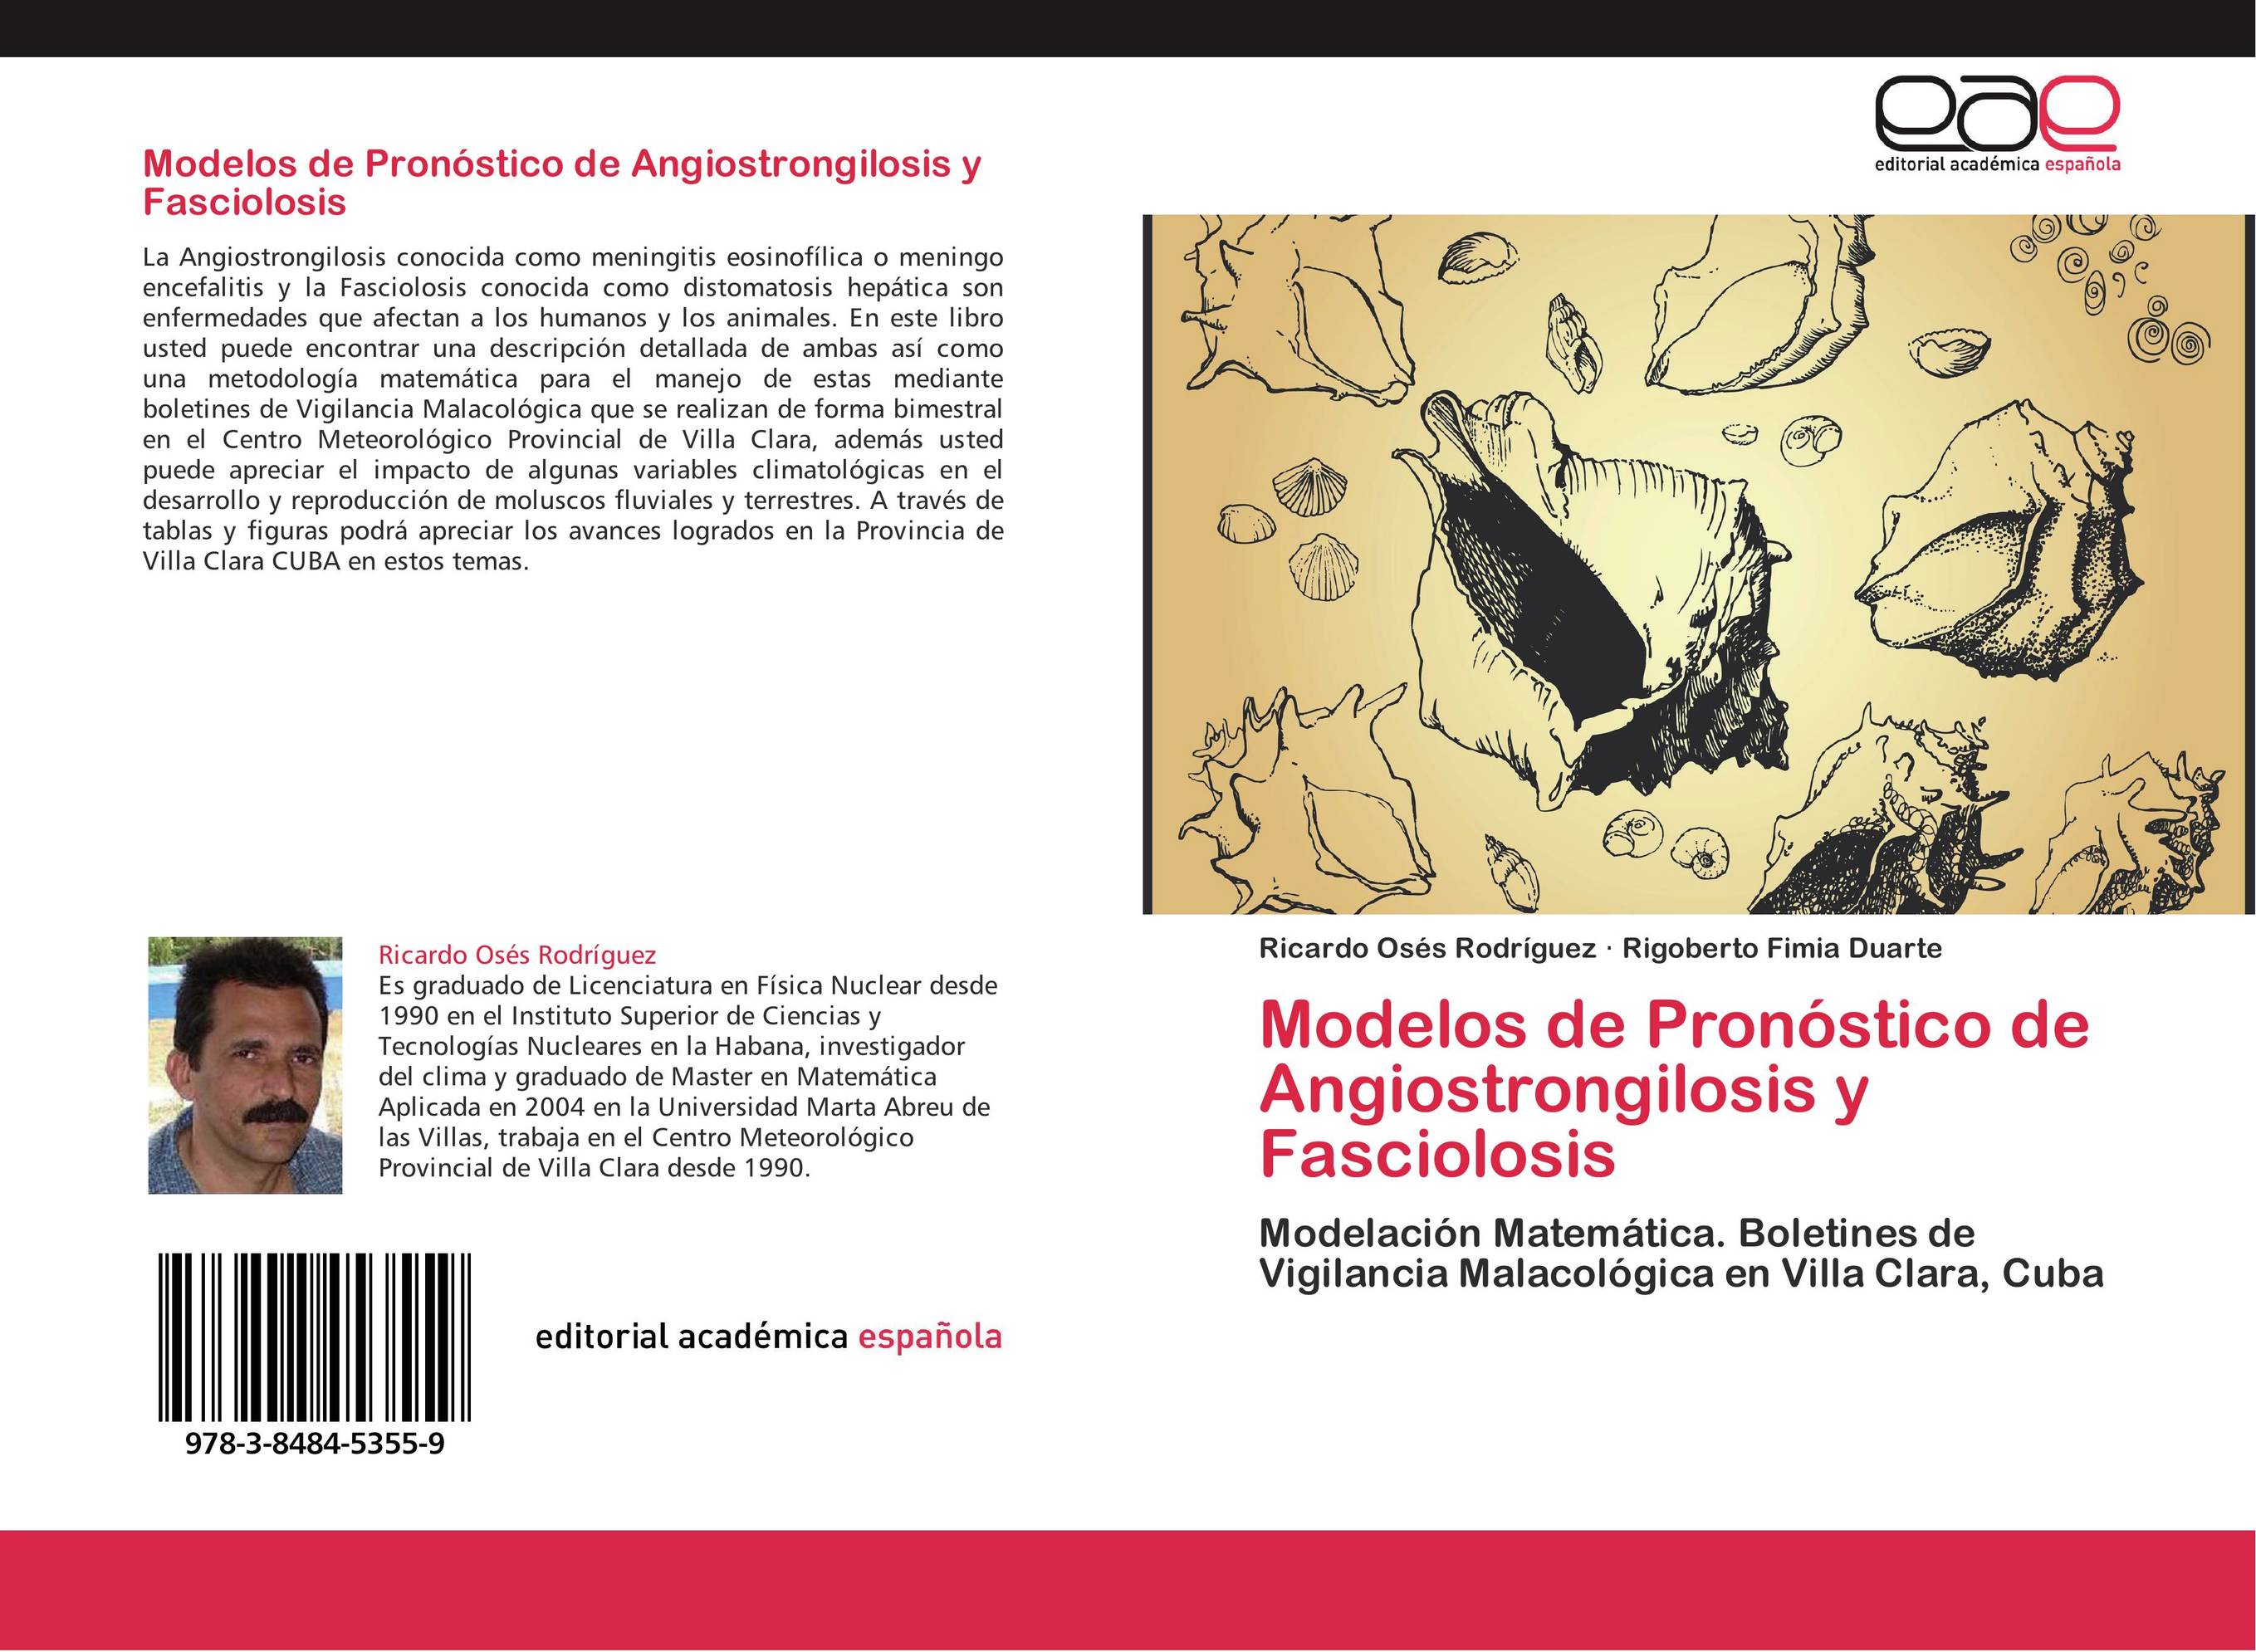 Modelos de Pronóstico de Angiostrongilosis y Fasciolosis